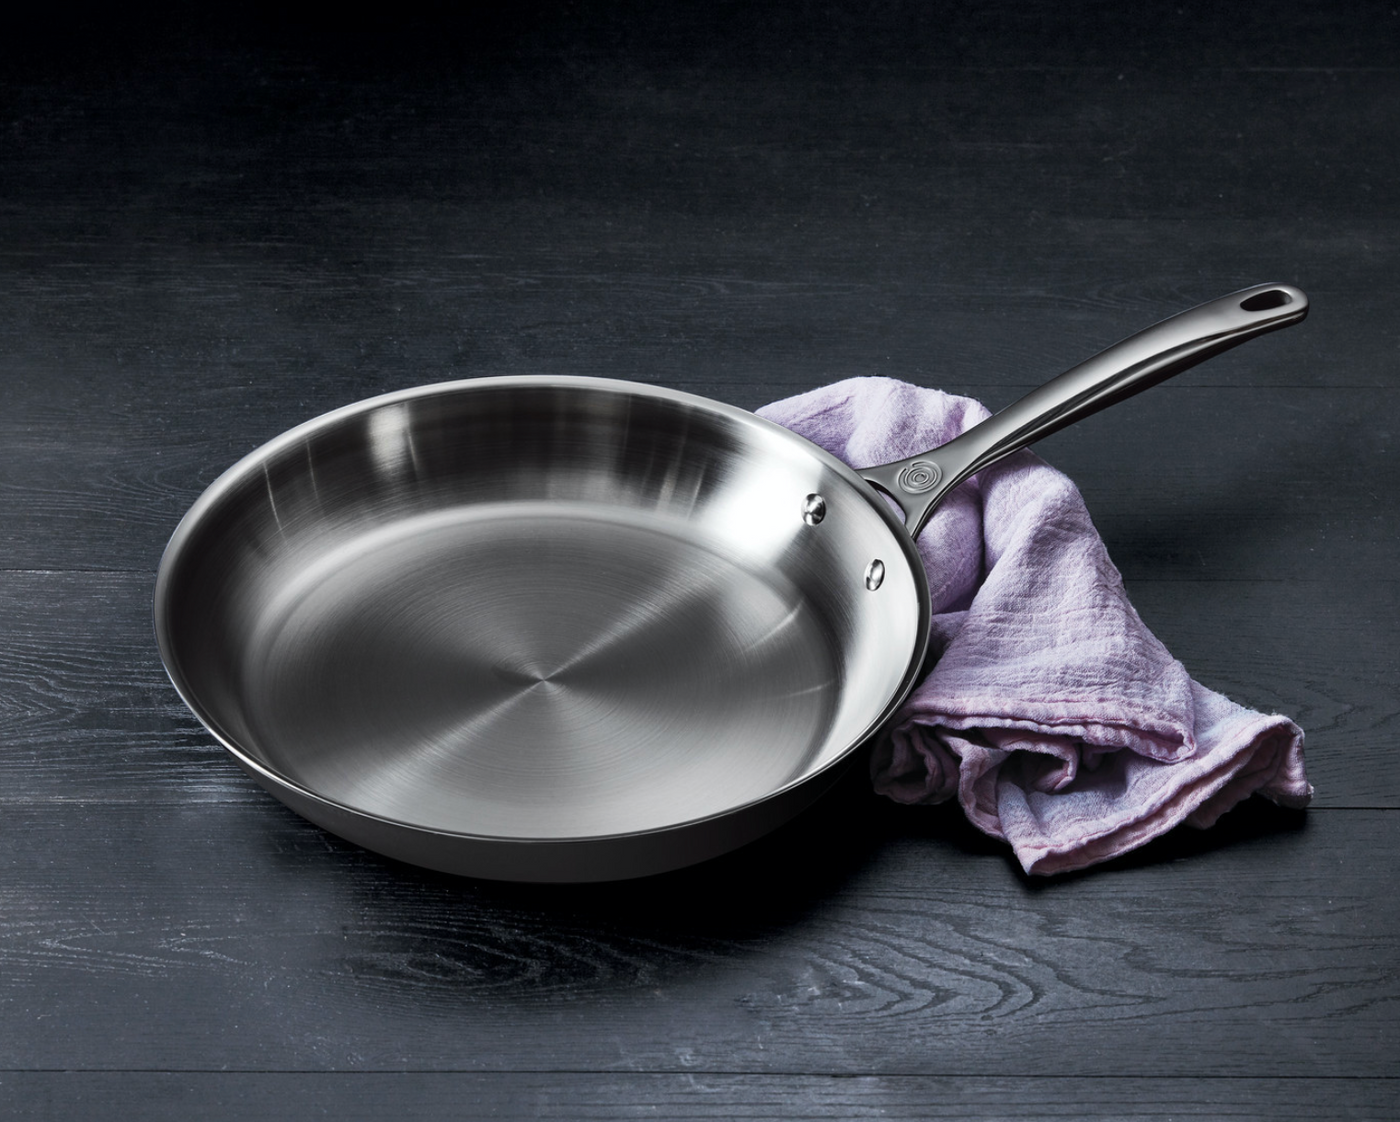 Le Creuset Tri-Ply Stainless Steel 3.5-Quart Saucier Pan